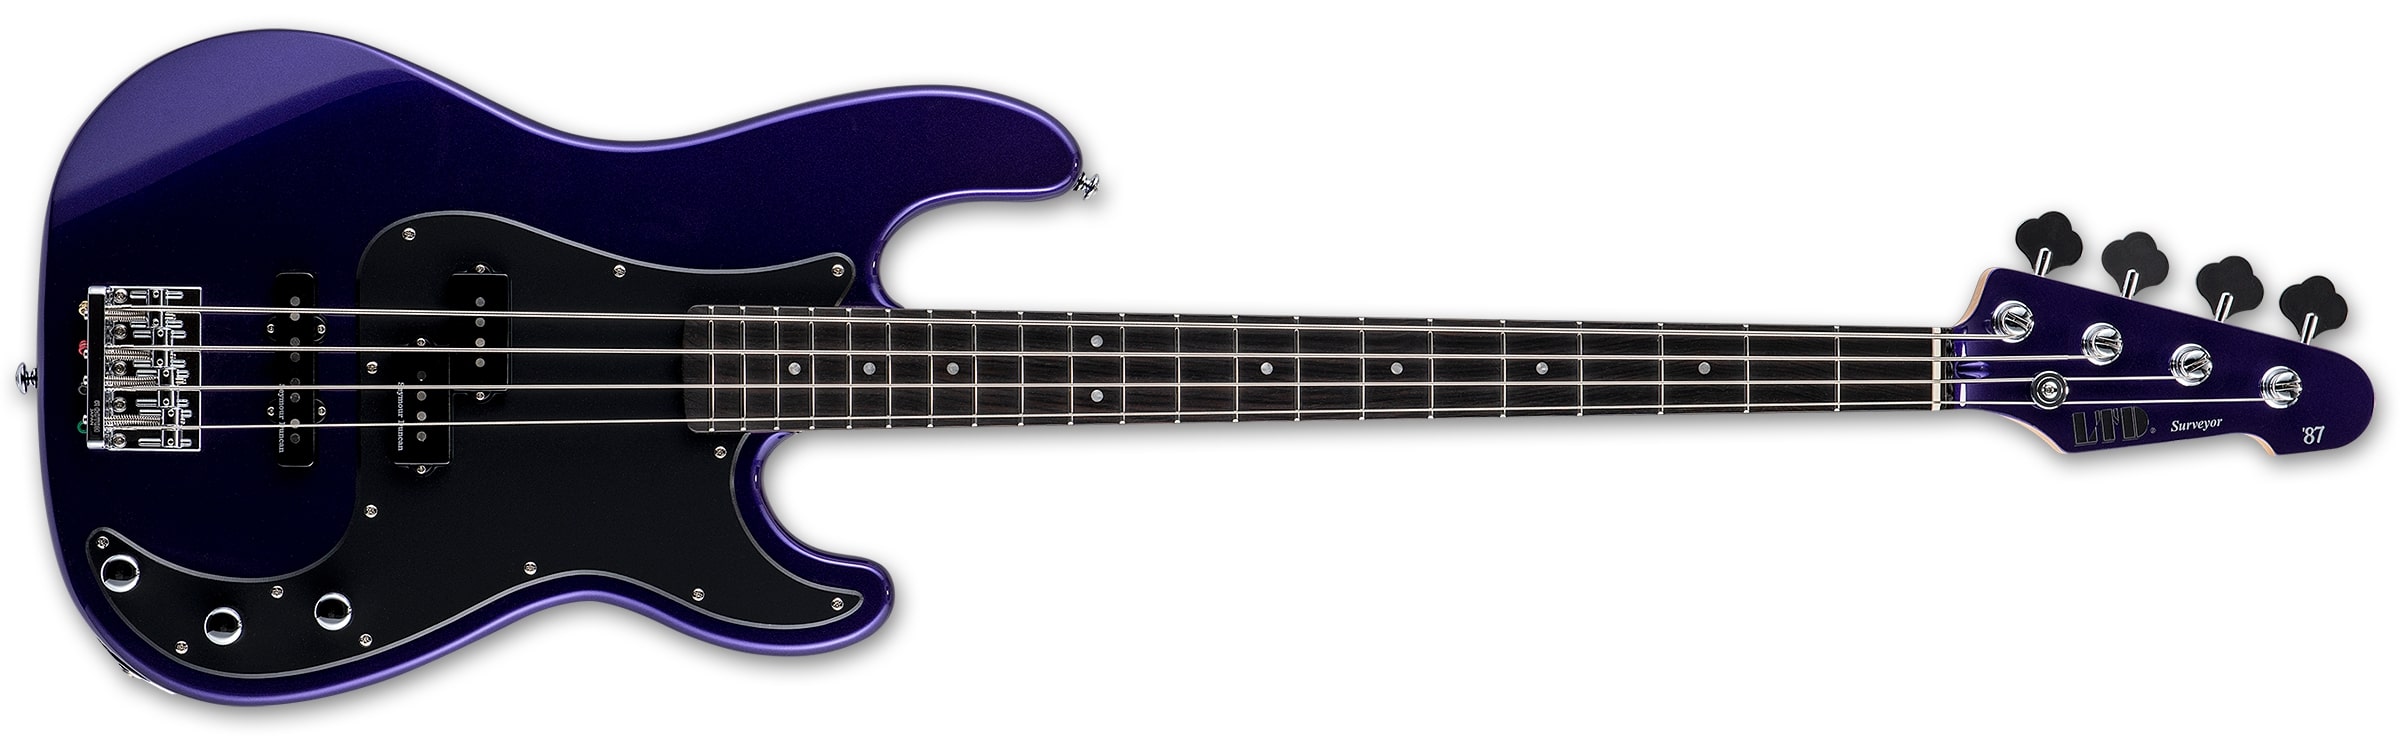 LTD Surveyor '87 Electric Bass, Dark Metallic Purple LSURVEYOR87DMP